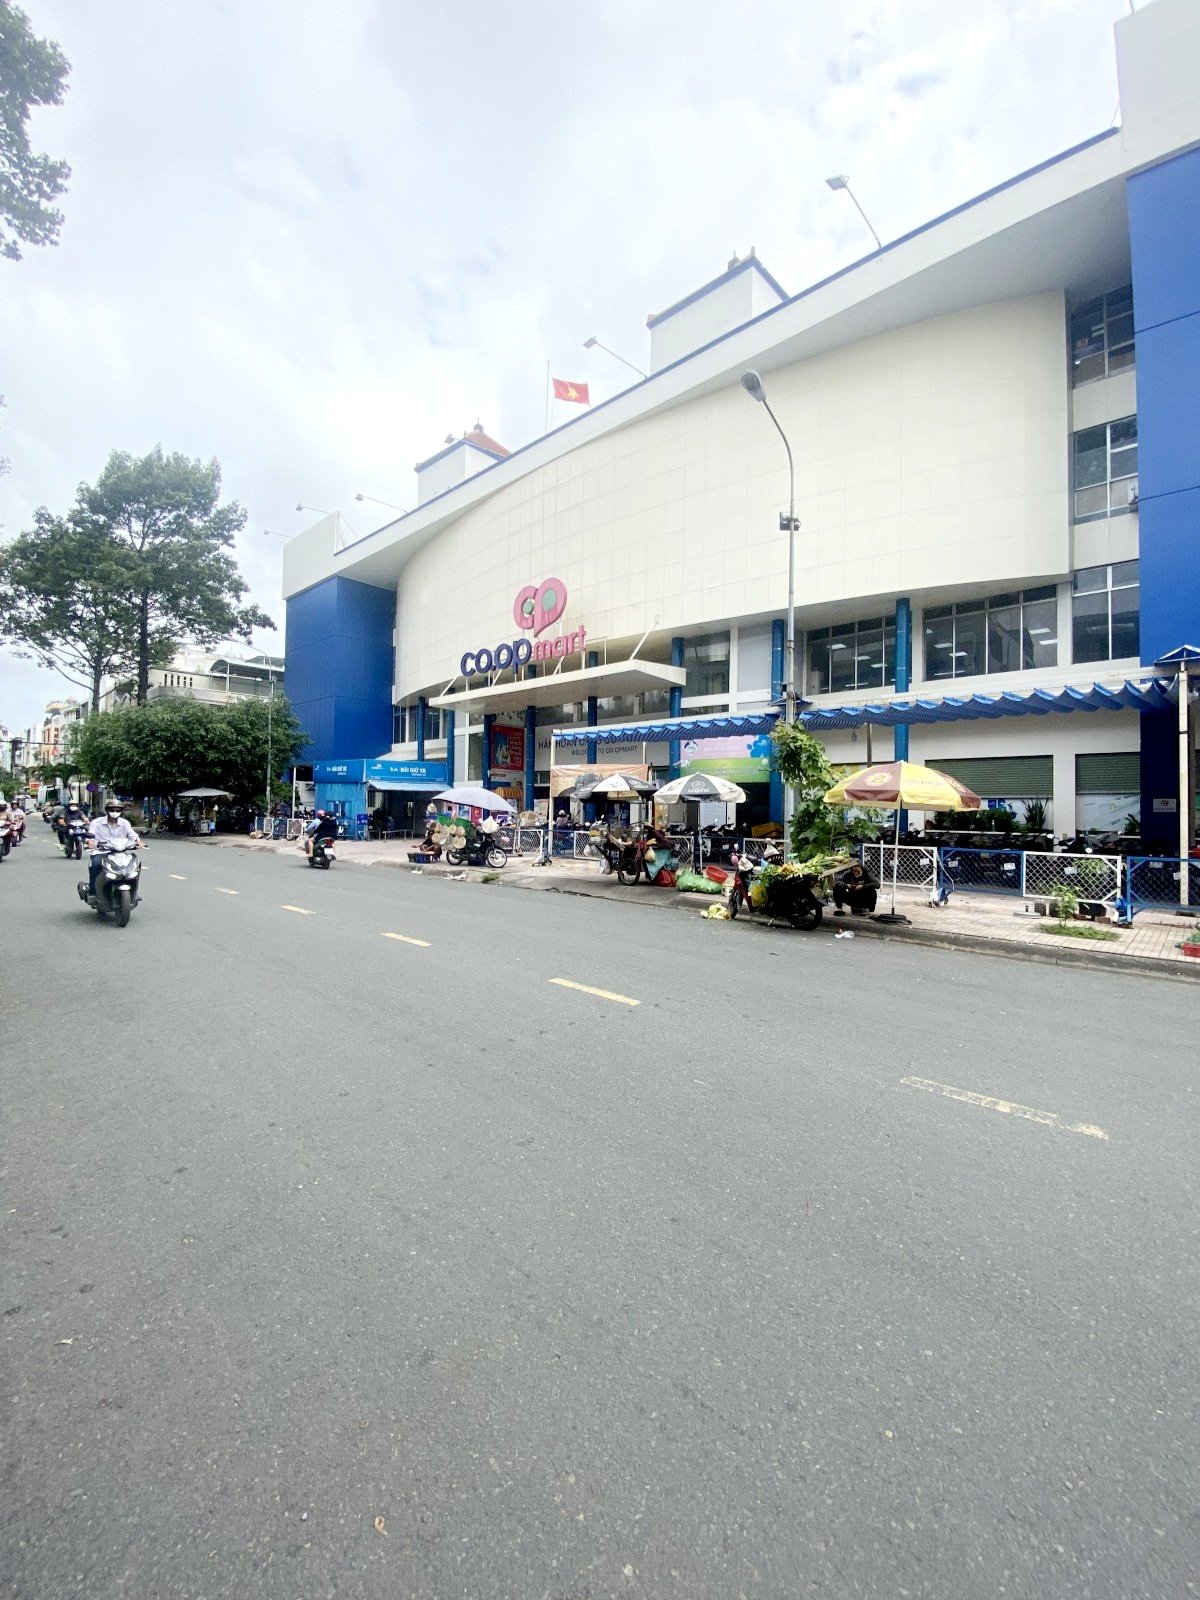 Bán nhà mặt phố tại Đường 29, Bình Tân, Tp.HCM diện tích 80m2